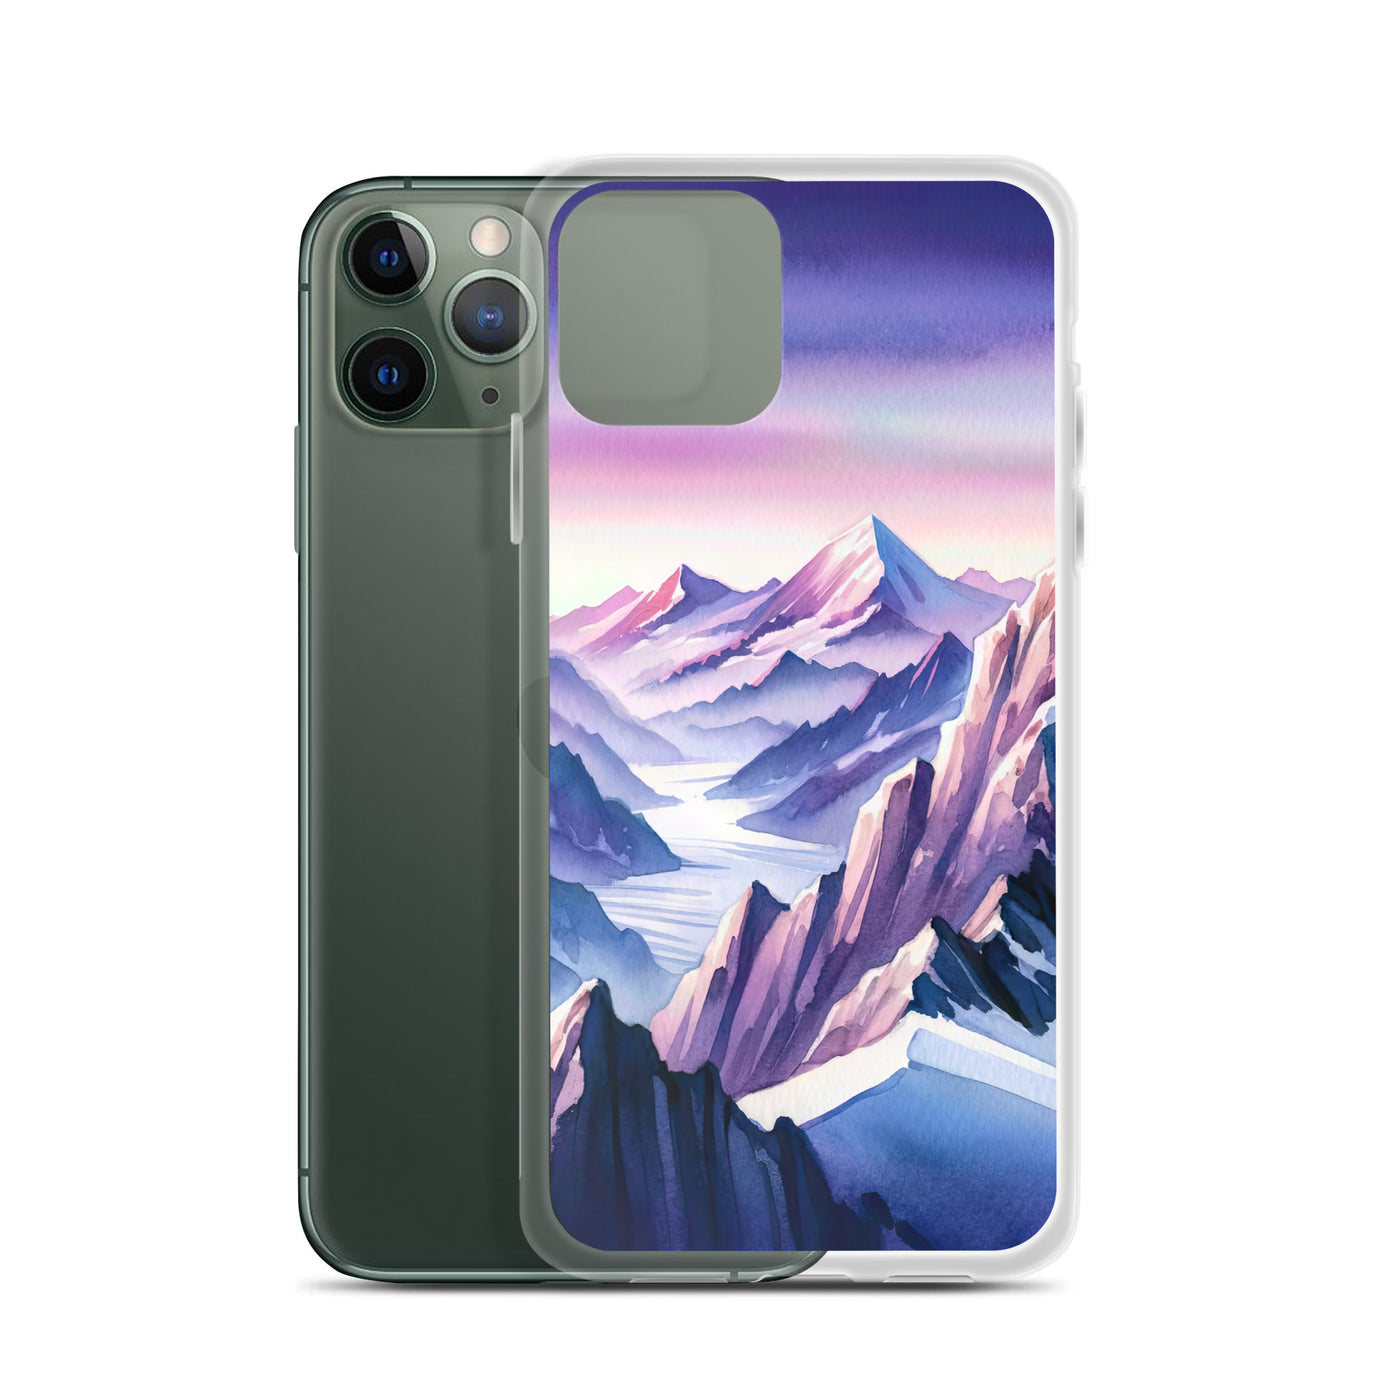 Aquarell eines Bergsteigers auf einem Alpengipfel in der Abenddämmerung - iPhone Schutzhülle (durchsichtig) wandern xxx yyy zzz